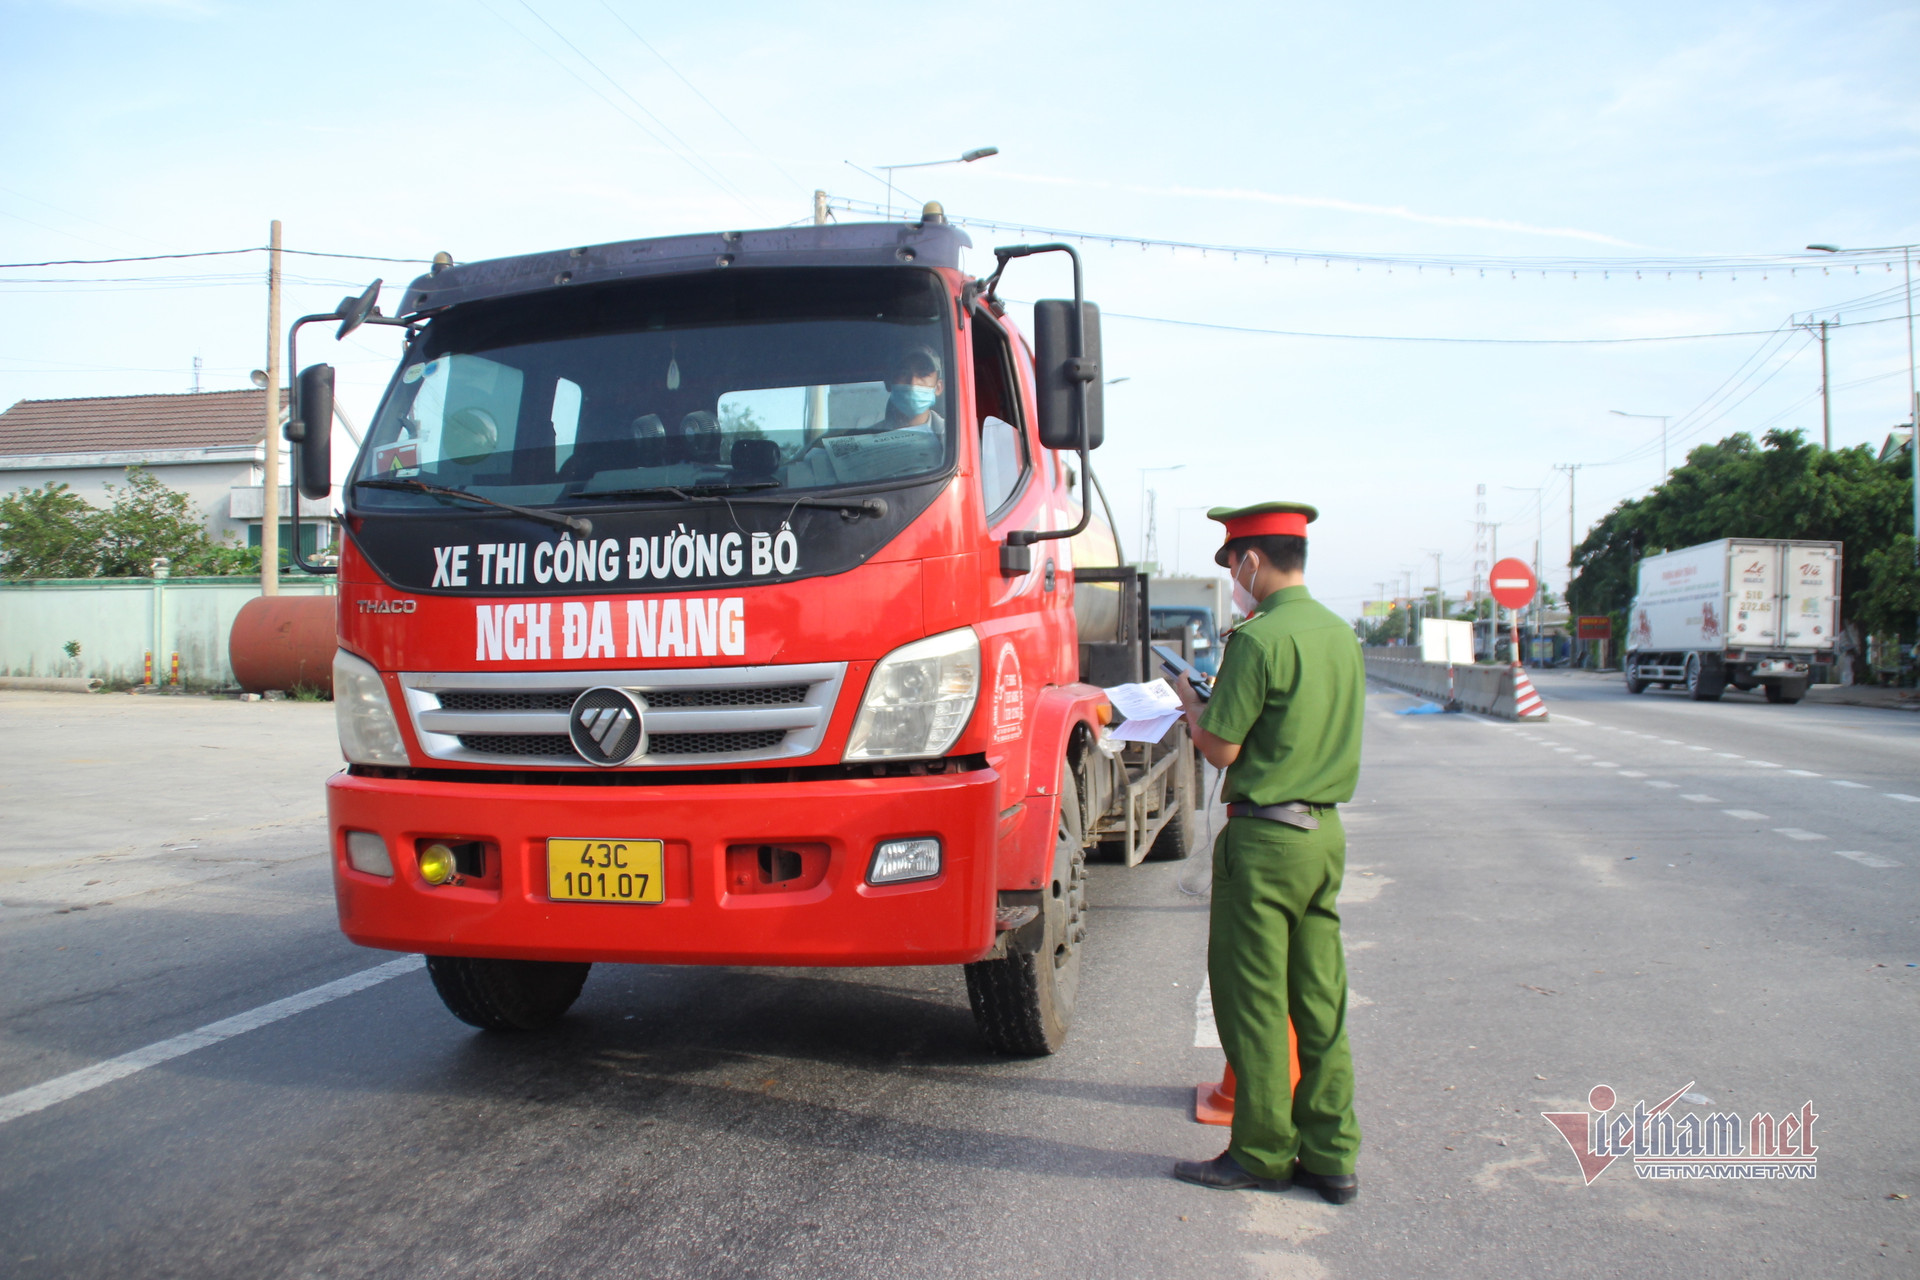 Ô tô qua chốt ở Quảng Ngãi vẫn được kiểm soát nghiêm ngặt